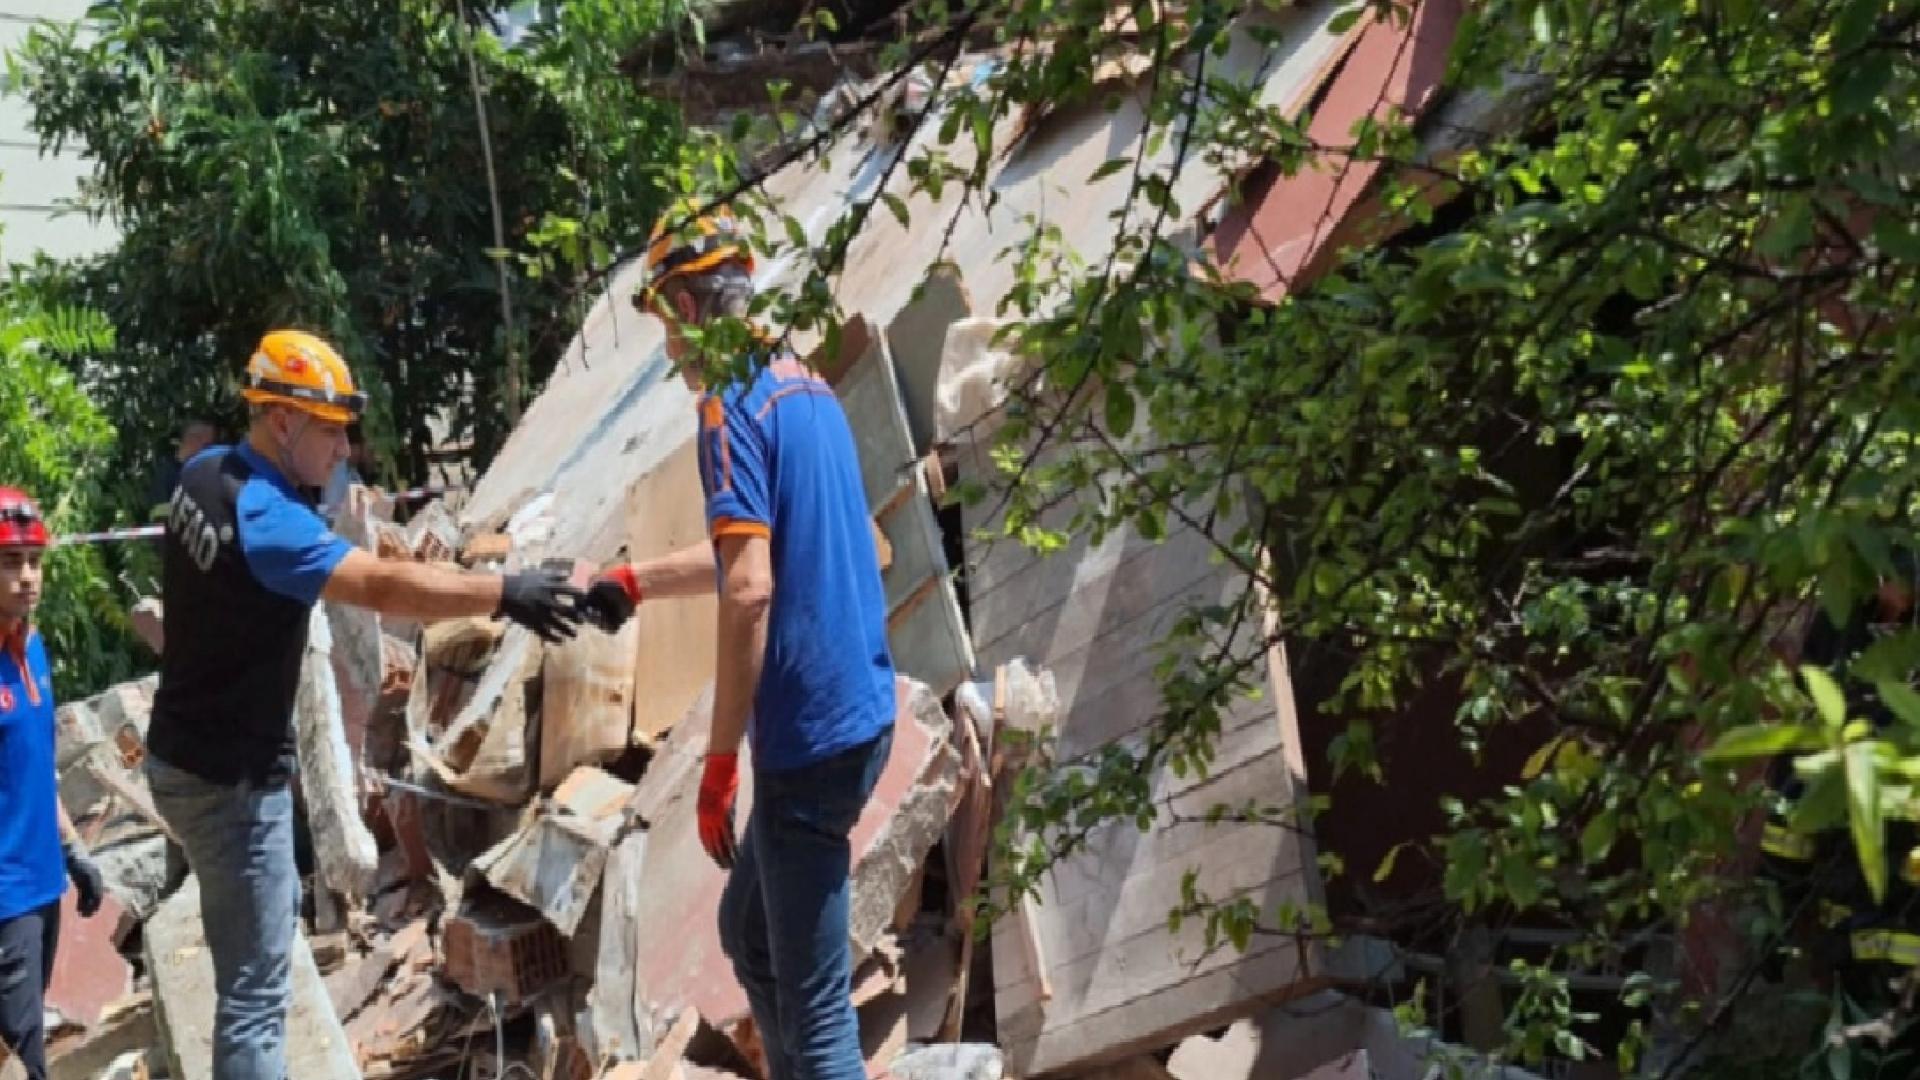 Kocaeli'de iş cinayeti: Evin yıkımında göçük altında kalan 2 işçi yaşamını yitirdi